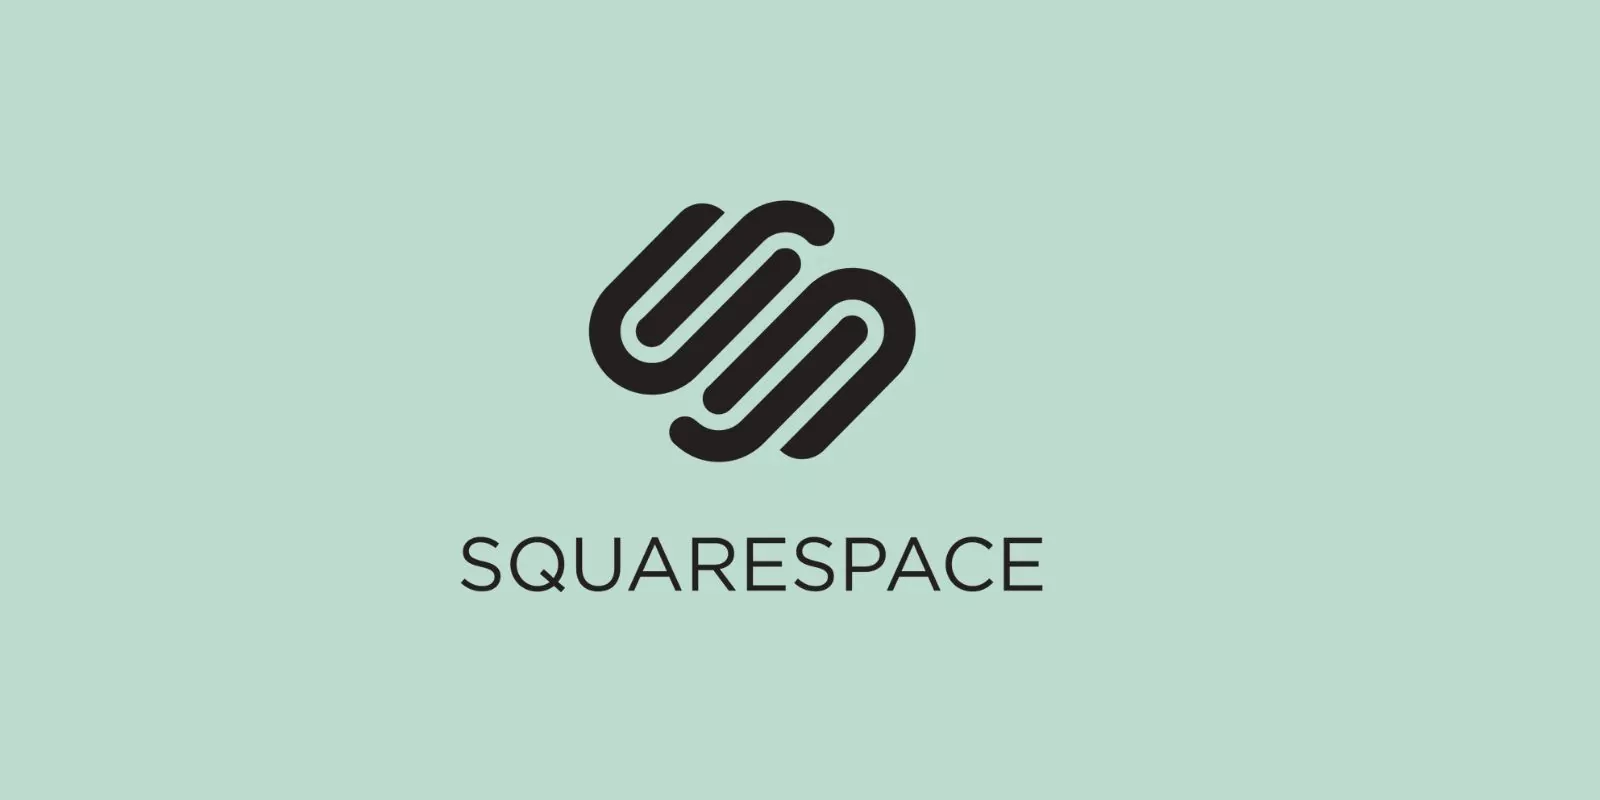 https://www.squarespace.com/